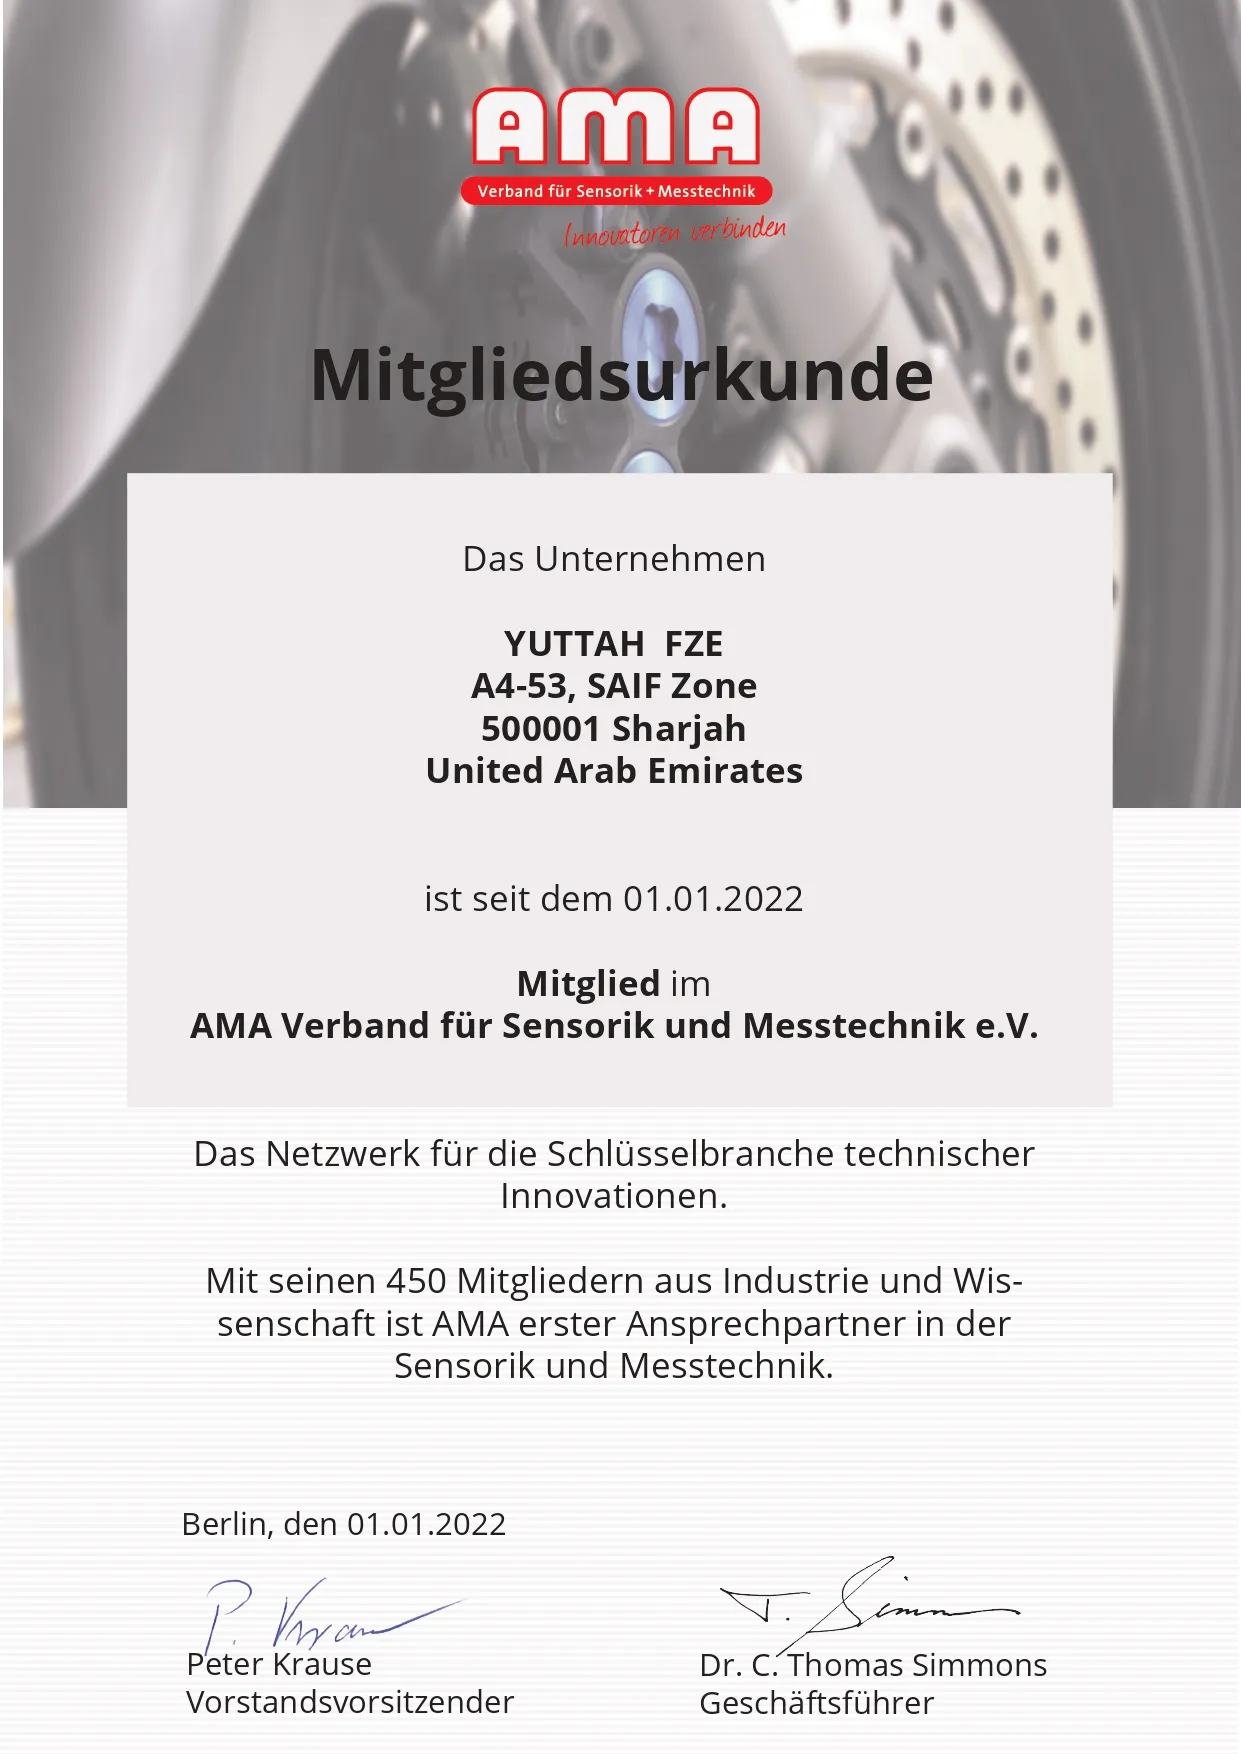 Member of the German Association for Sensors & Measurement (AMA)